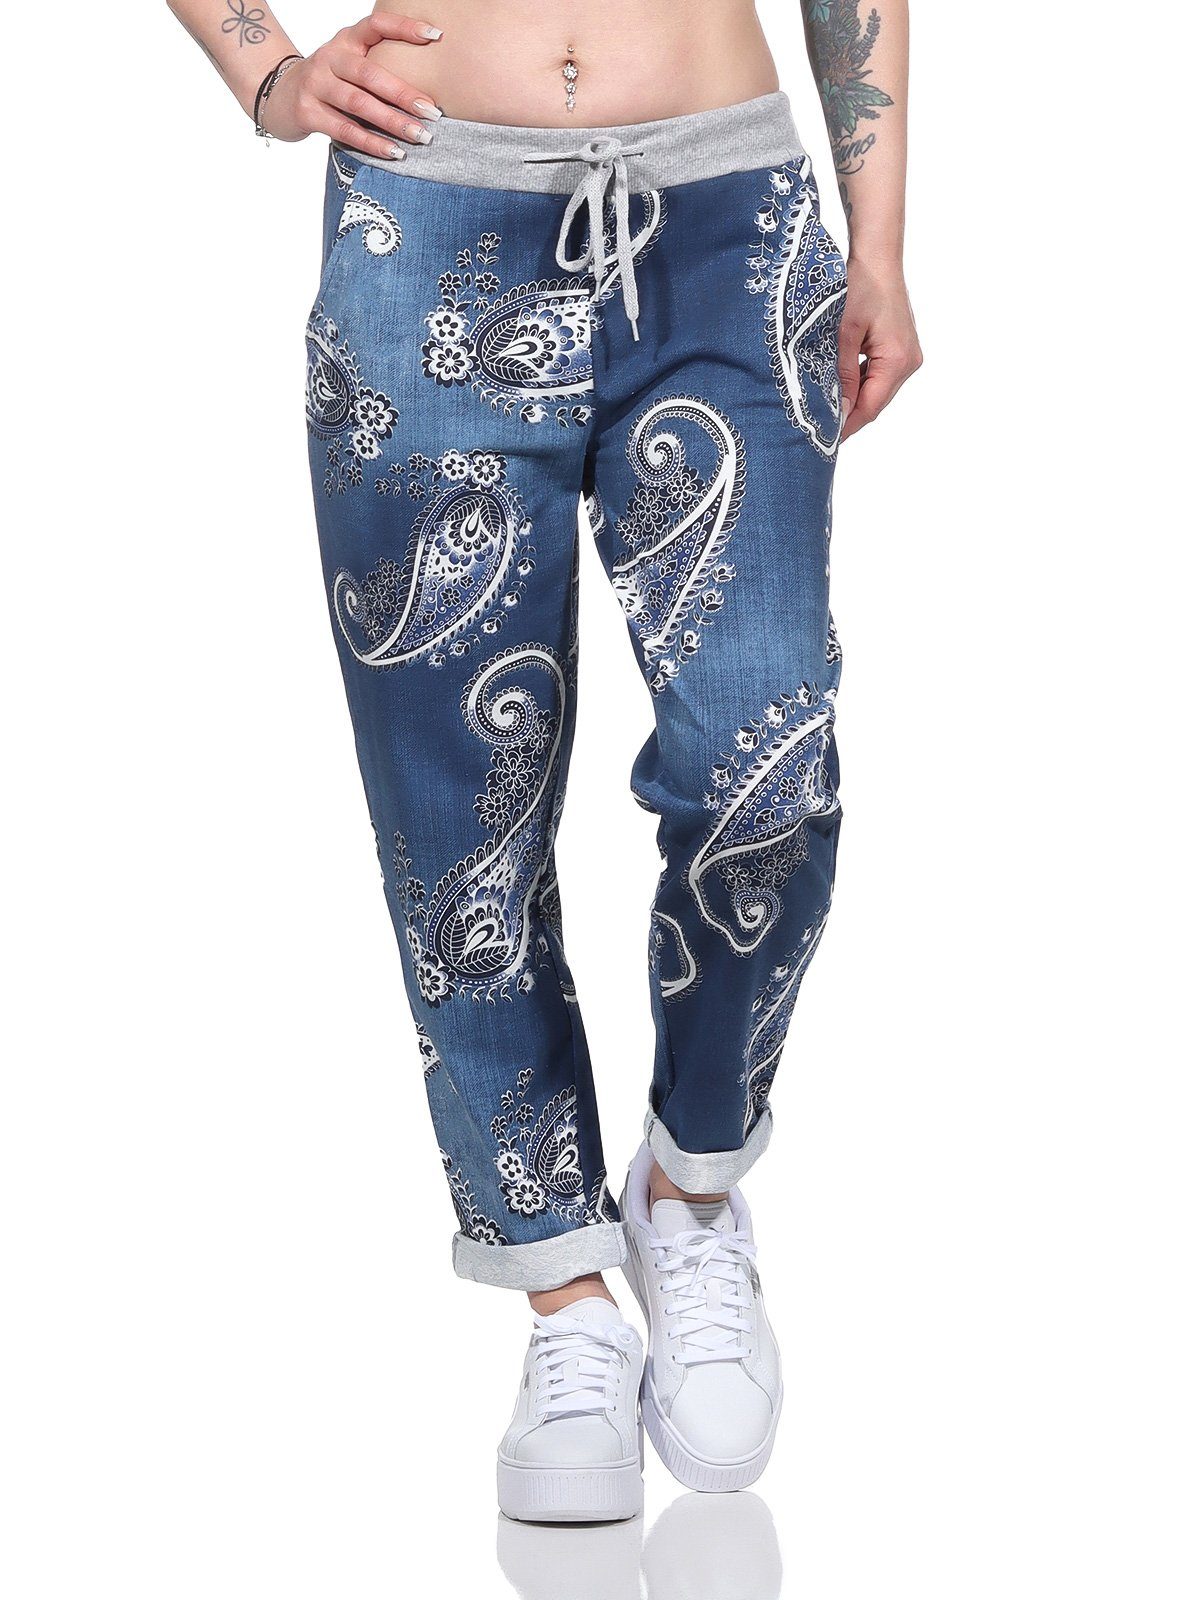 Damenmode Damen moderner und leichte dunkelblau Aurela Jogger in mit Bund Haushose Schnürung Jeansoptik Freizeithose Pants elastischem Jeansoptik